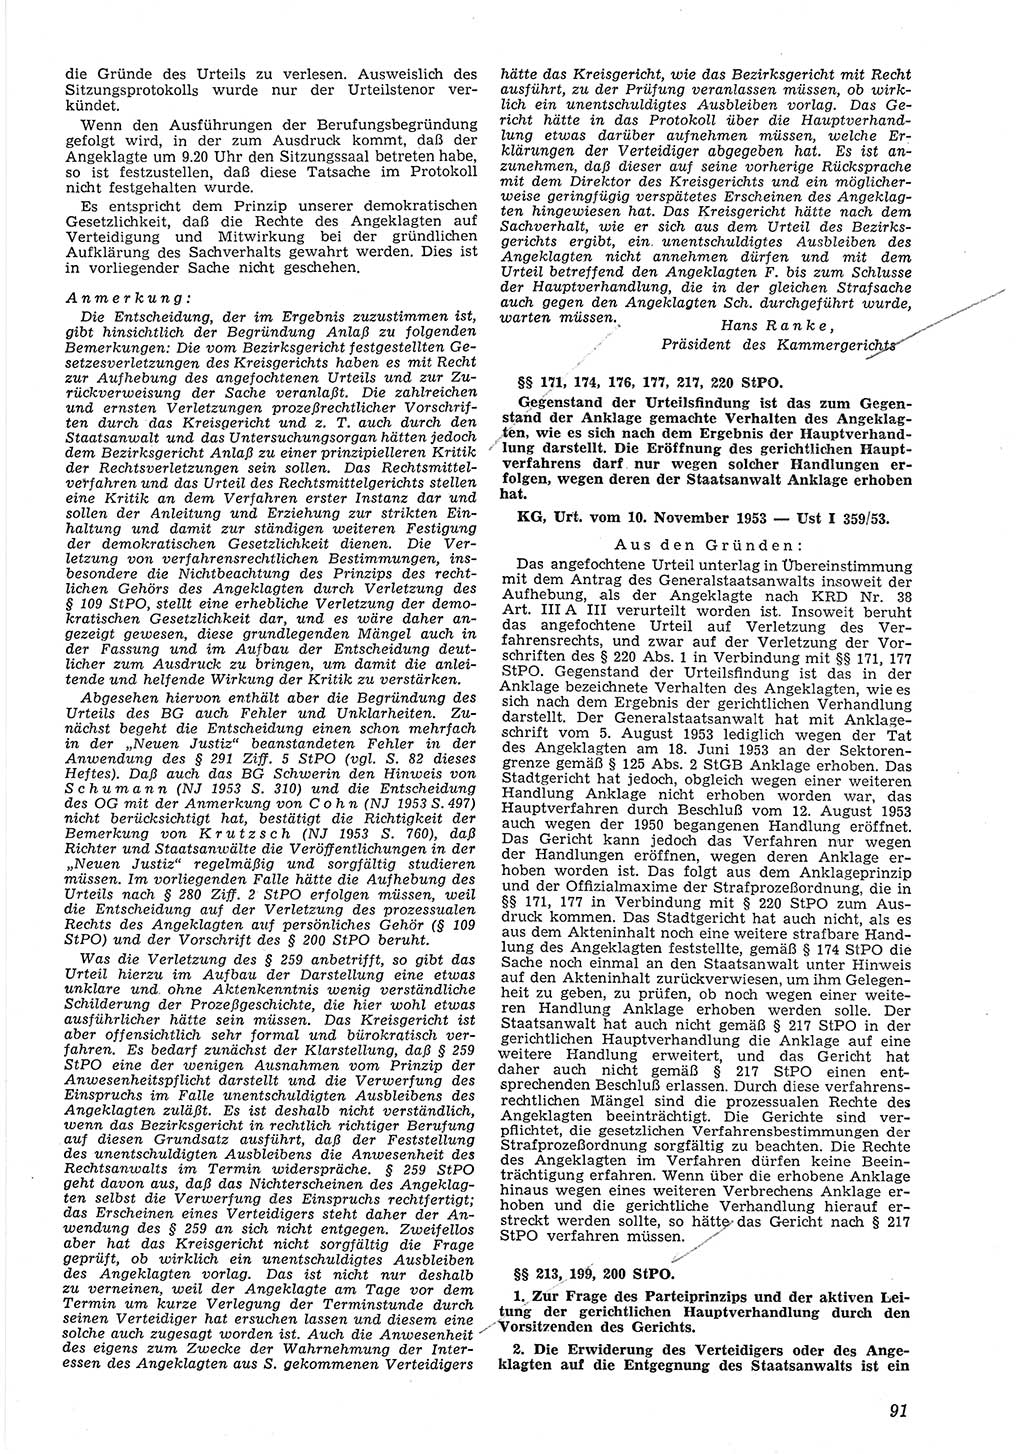 Neue Justiz (NJ), Zeitschrift für Recht und Rechtswissenschaft [Deutsche Demokratische Republik (DDR)], 8. Jahrgang 1954, Seite 91 (NJ DDR 1954, S. 91)